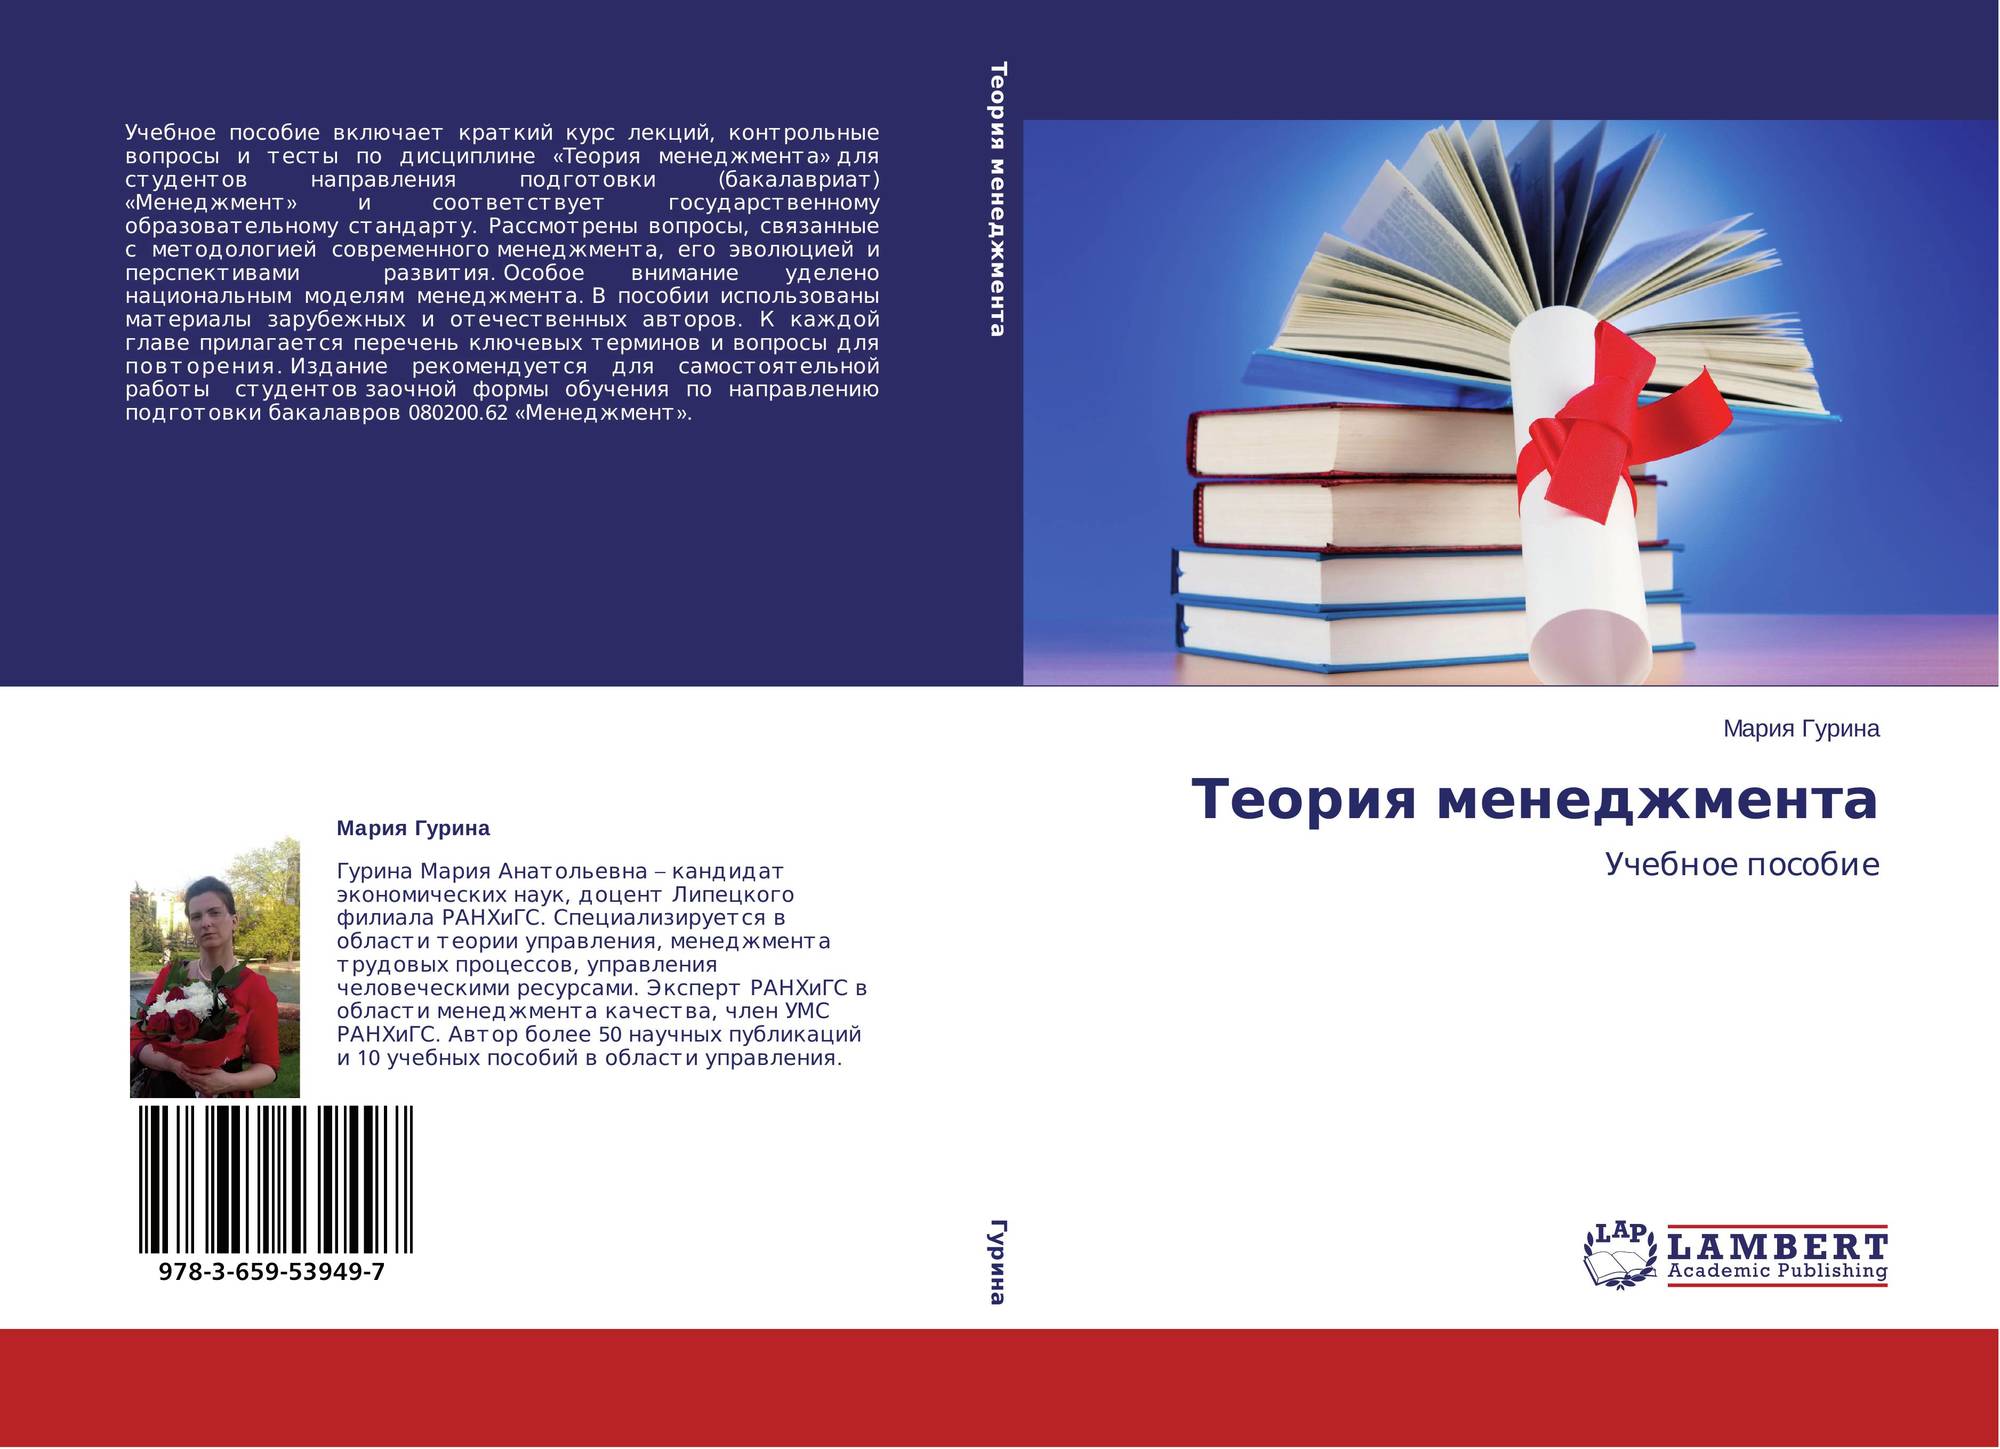 Теория менеджмента тест. Теория менеджмента книга. Lambert Academic Publishing. ISBN 978-3-12-605359-4.